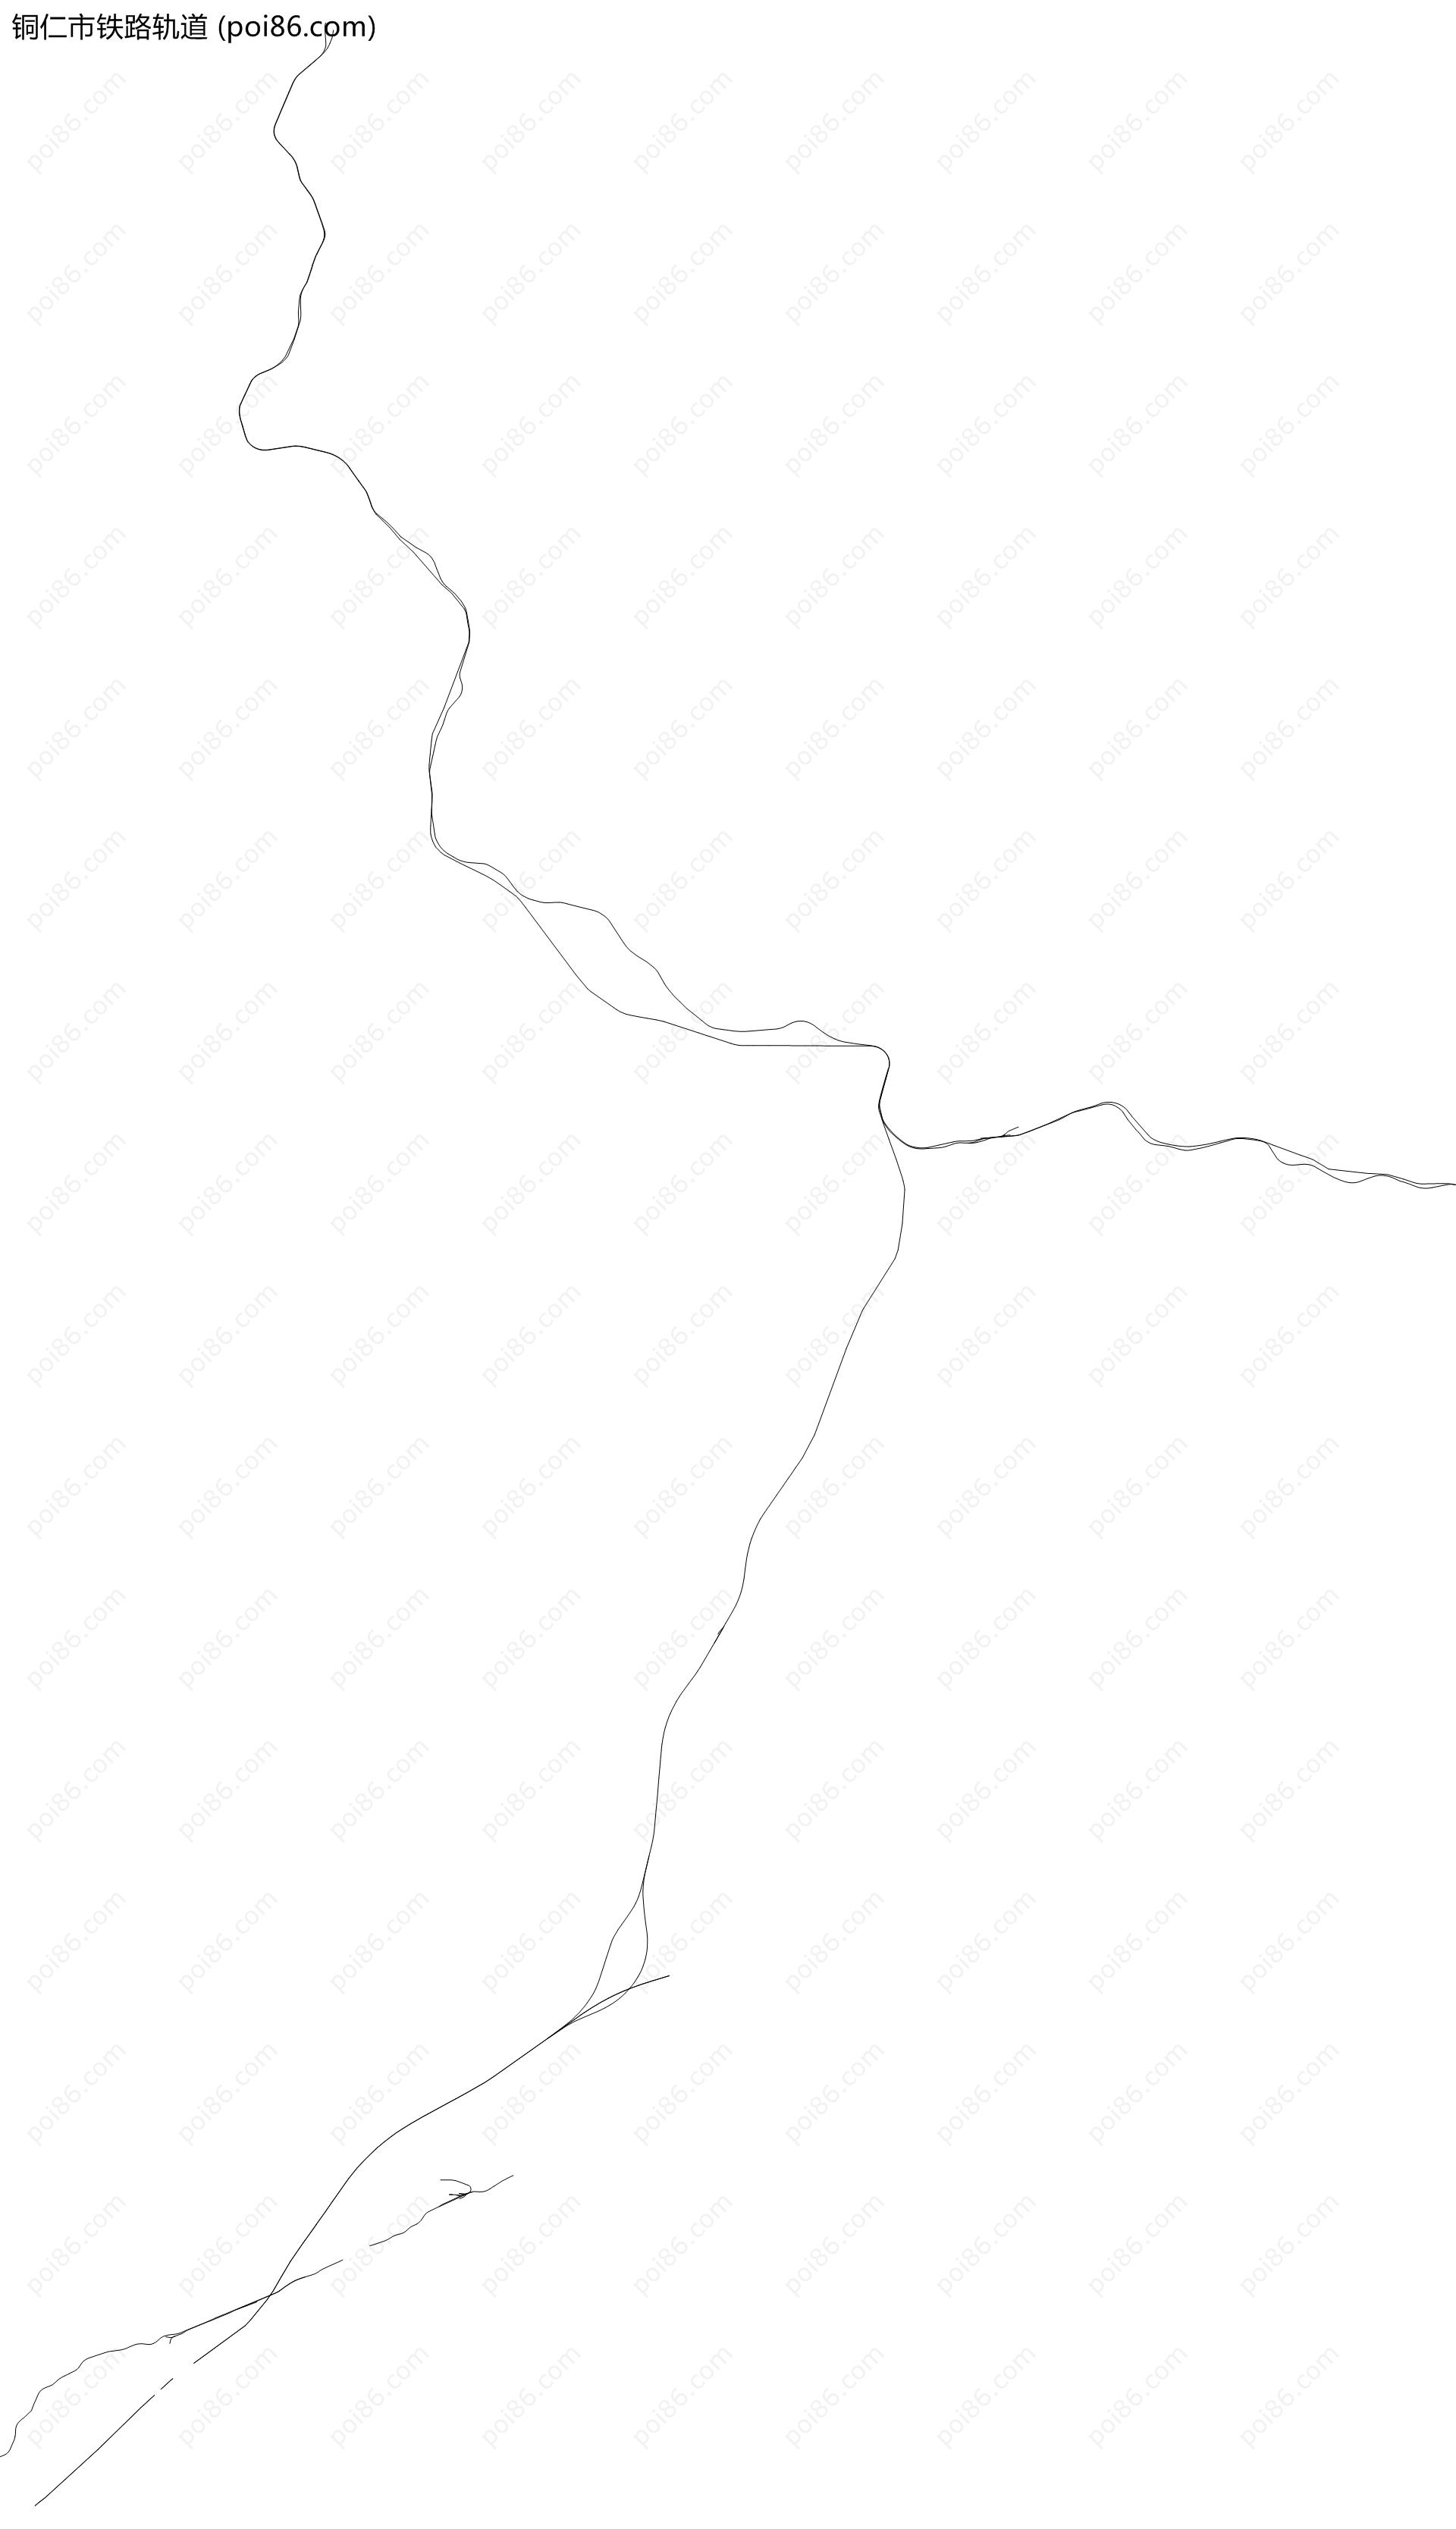 铜仁市铁路轨道地图